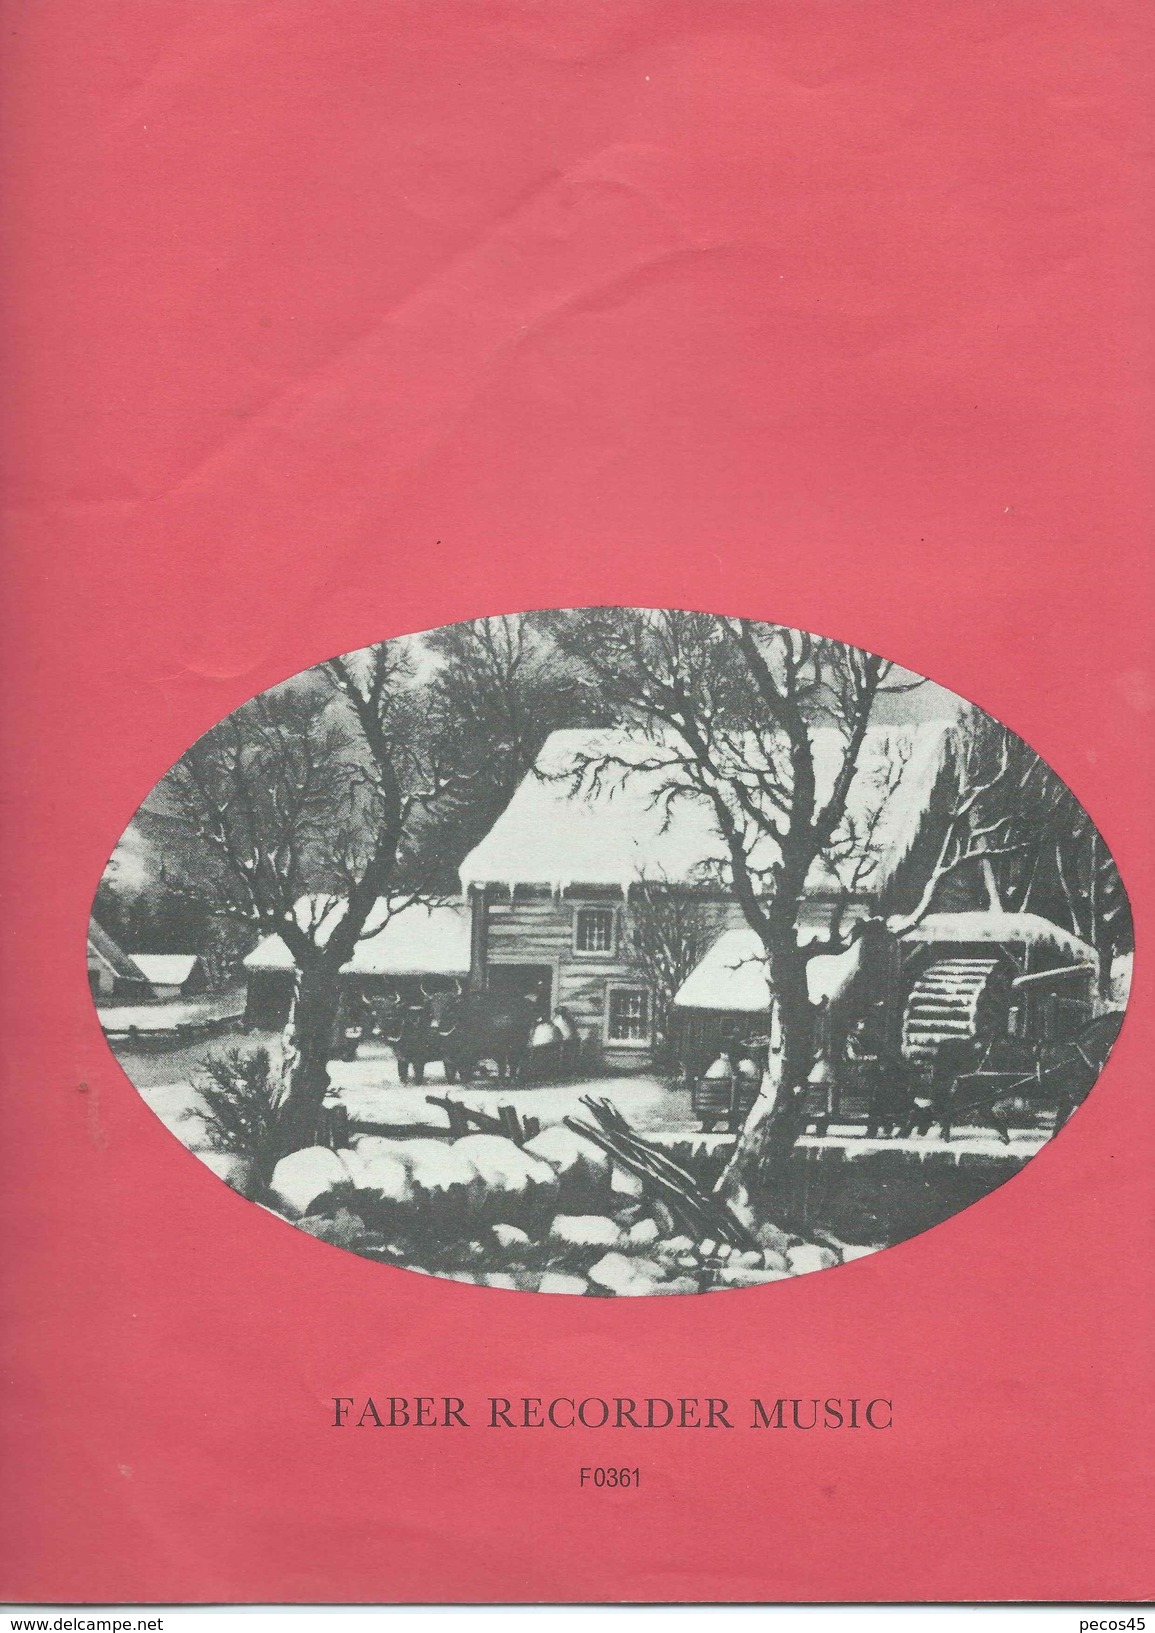 Partition : "JINGLE BELLS" 1968/69. - Scholingsboek